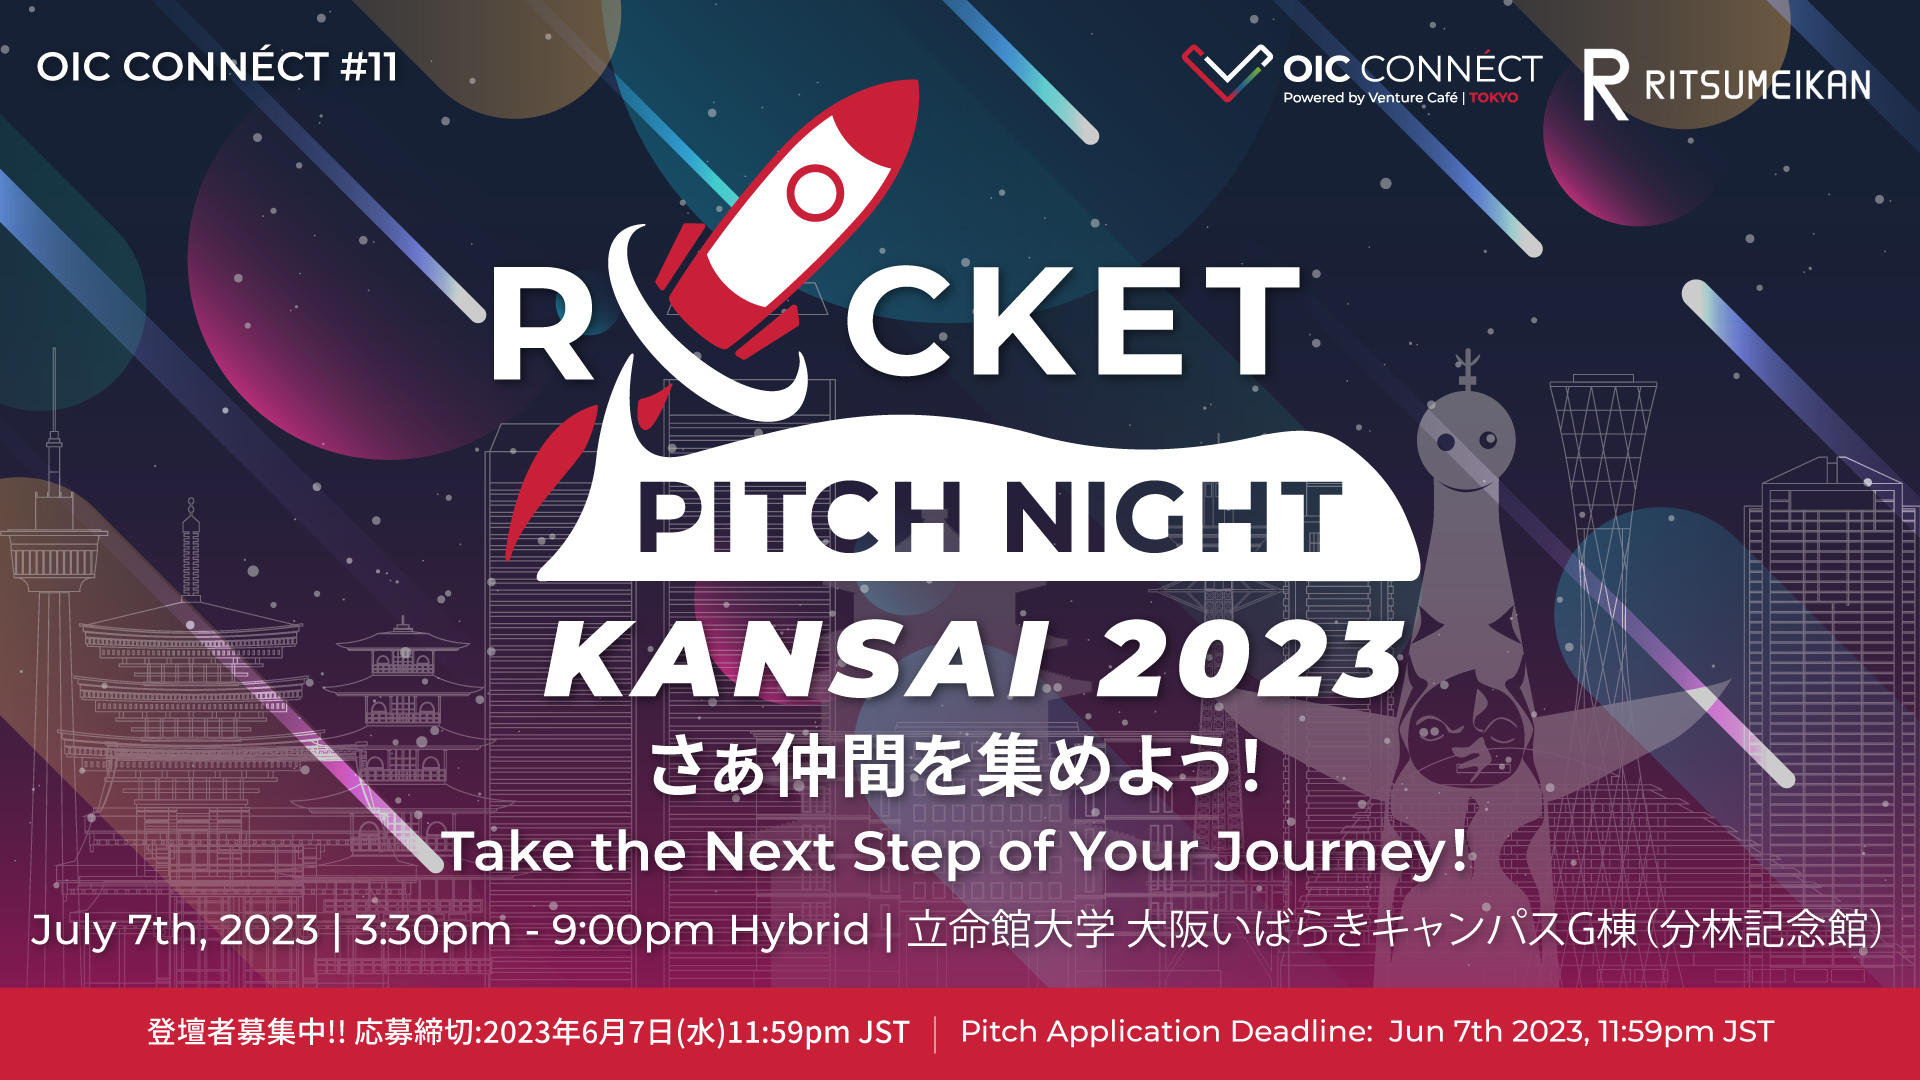 起業のアイデア探しにも！日本最大級のピッチイベント「ROCKET PITCH NIGHT」関西初開催、オンライン配信も